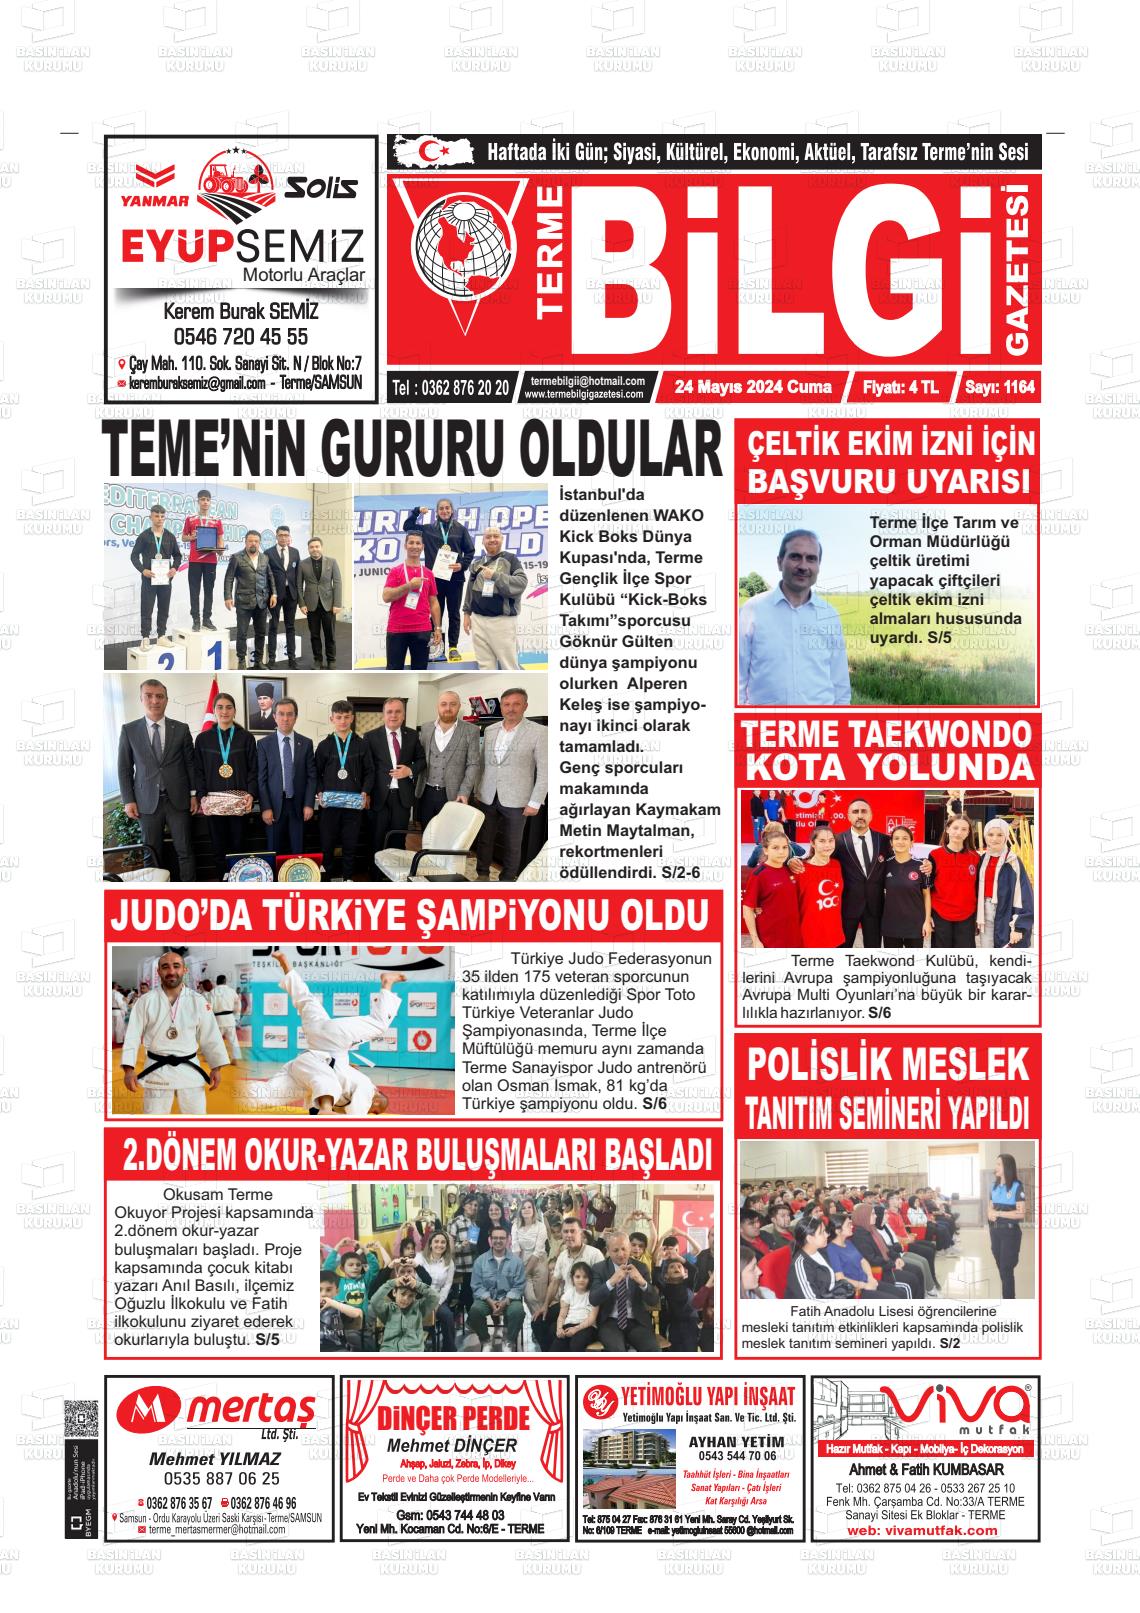 TERME BİLGİ Gazetesi